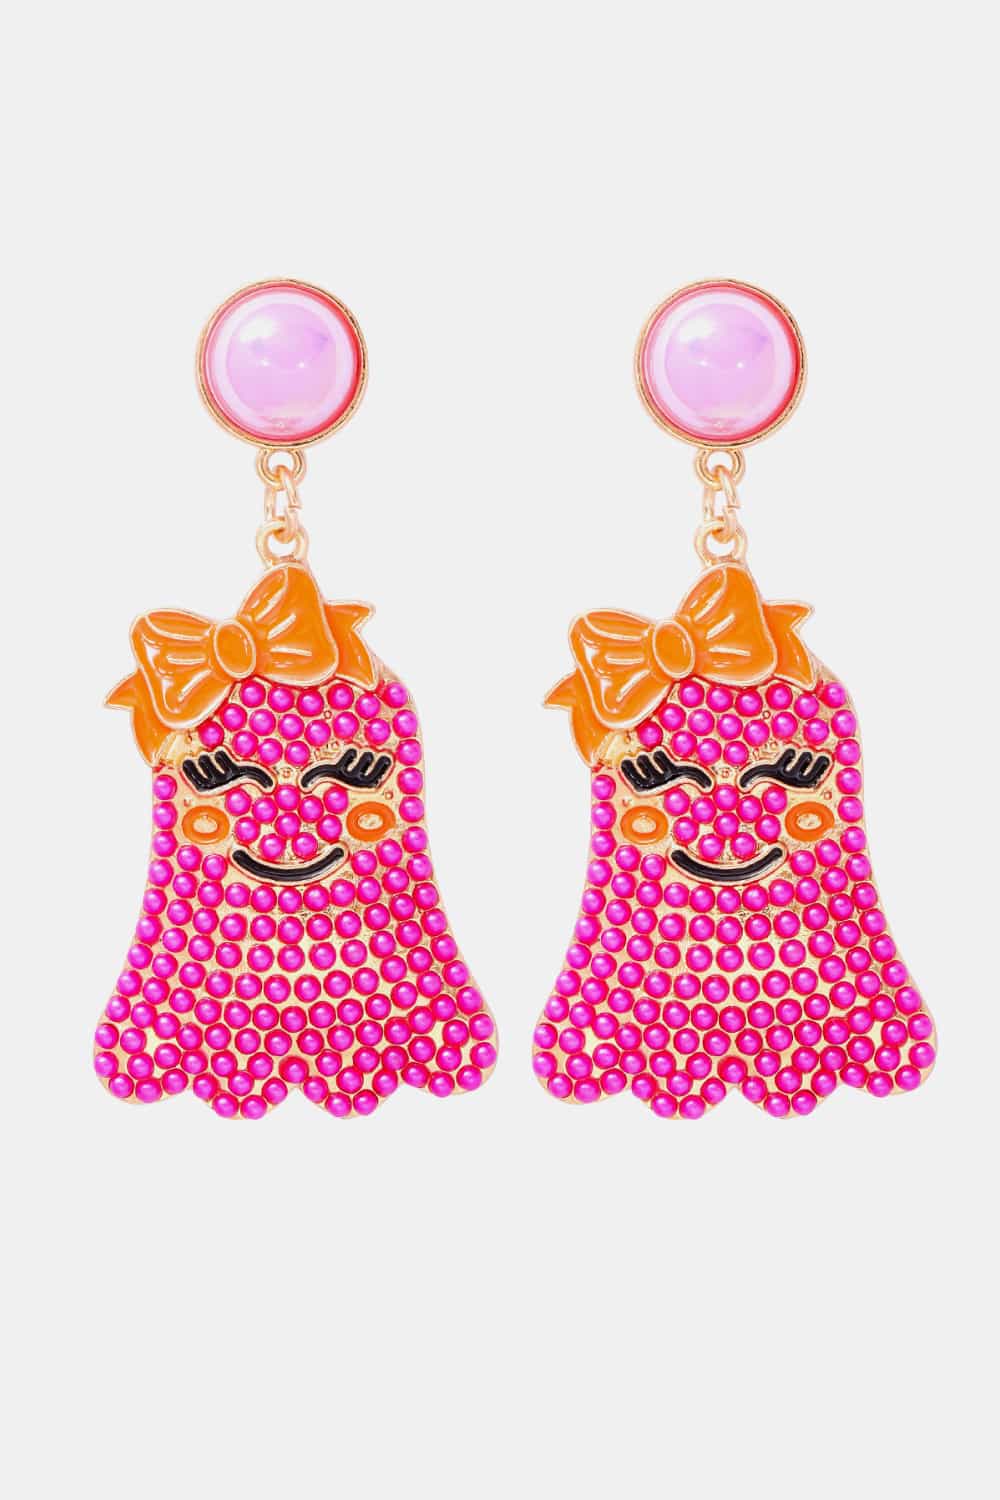 Smiling Ghost Shape Synthetic Pearl Earrings - Pink / One Size - Women’s Jewelry - Earrings - 6 - 2024